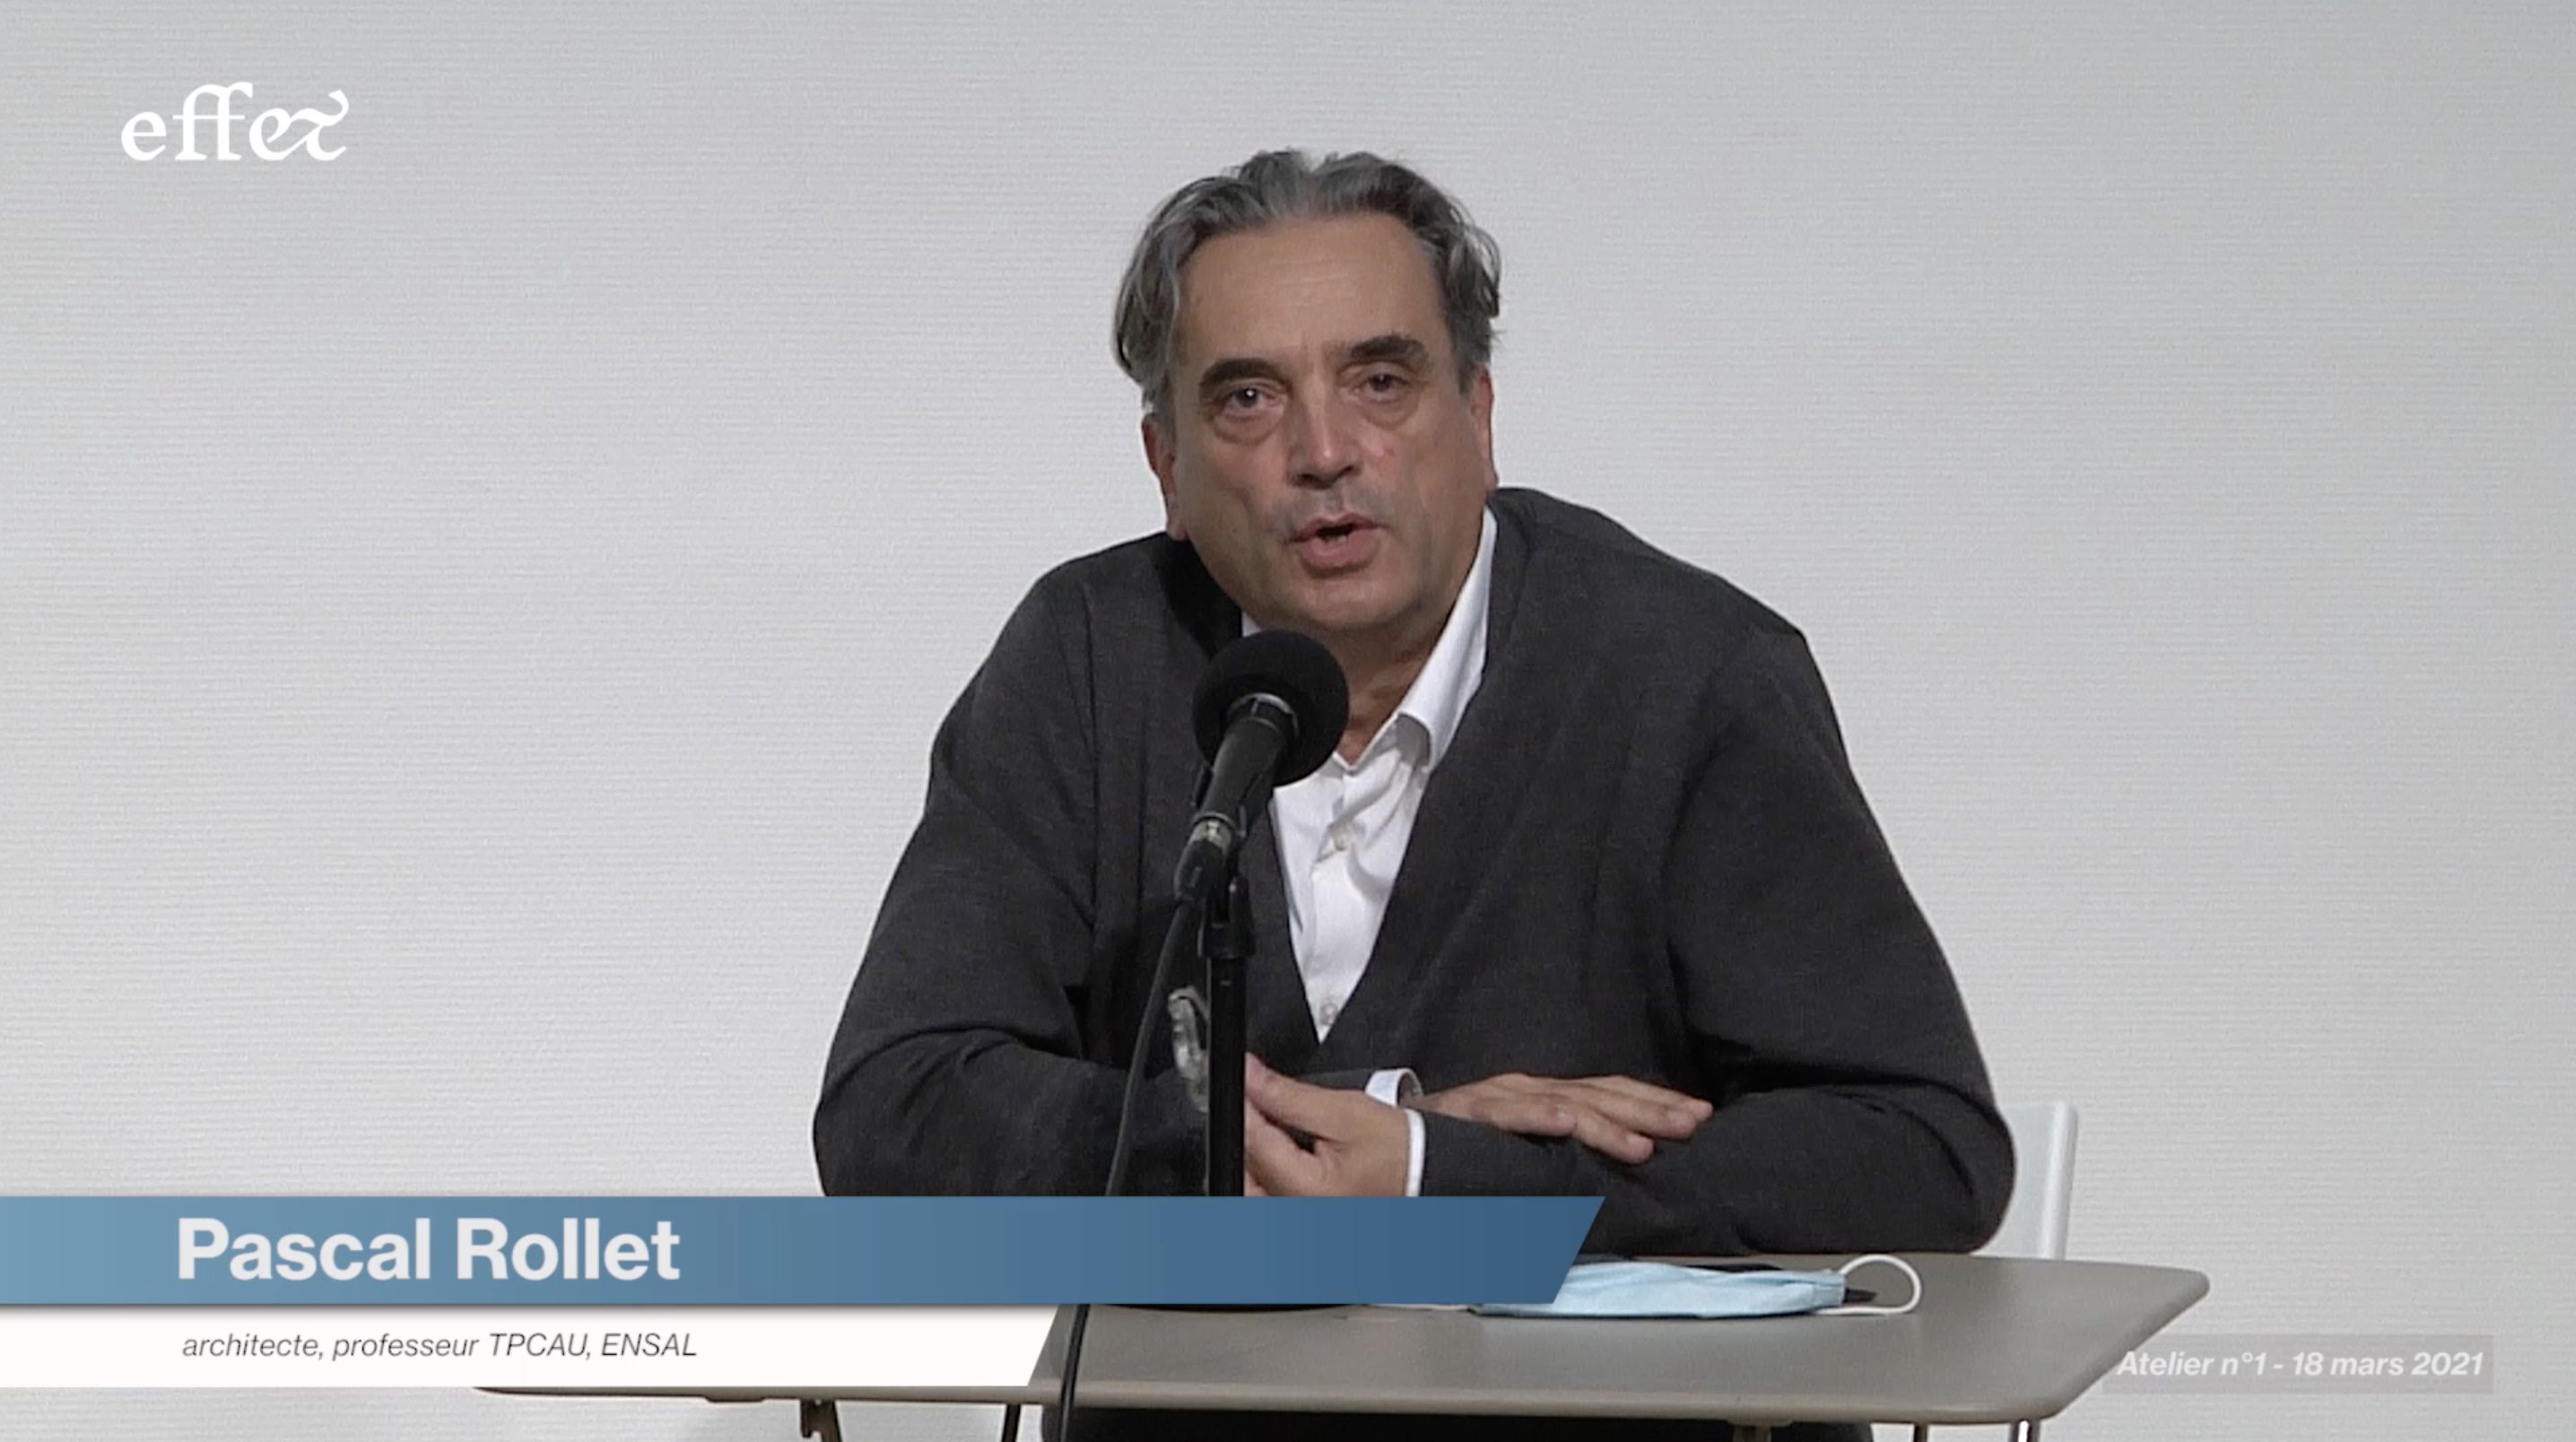 Pascal ROLLET - Atelier #1 de la chaire EFF&T (18 mars 2021)